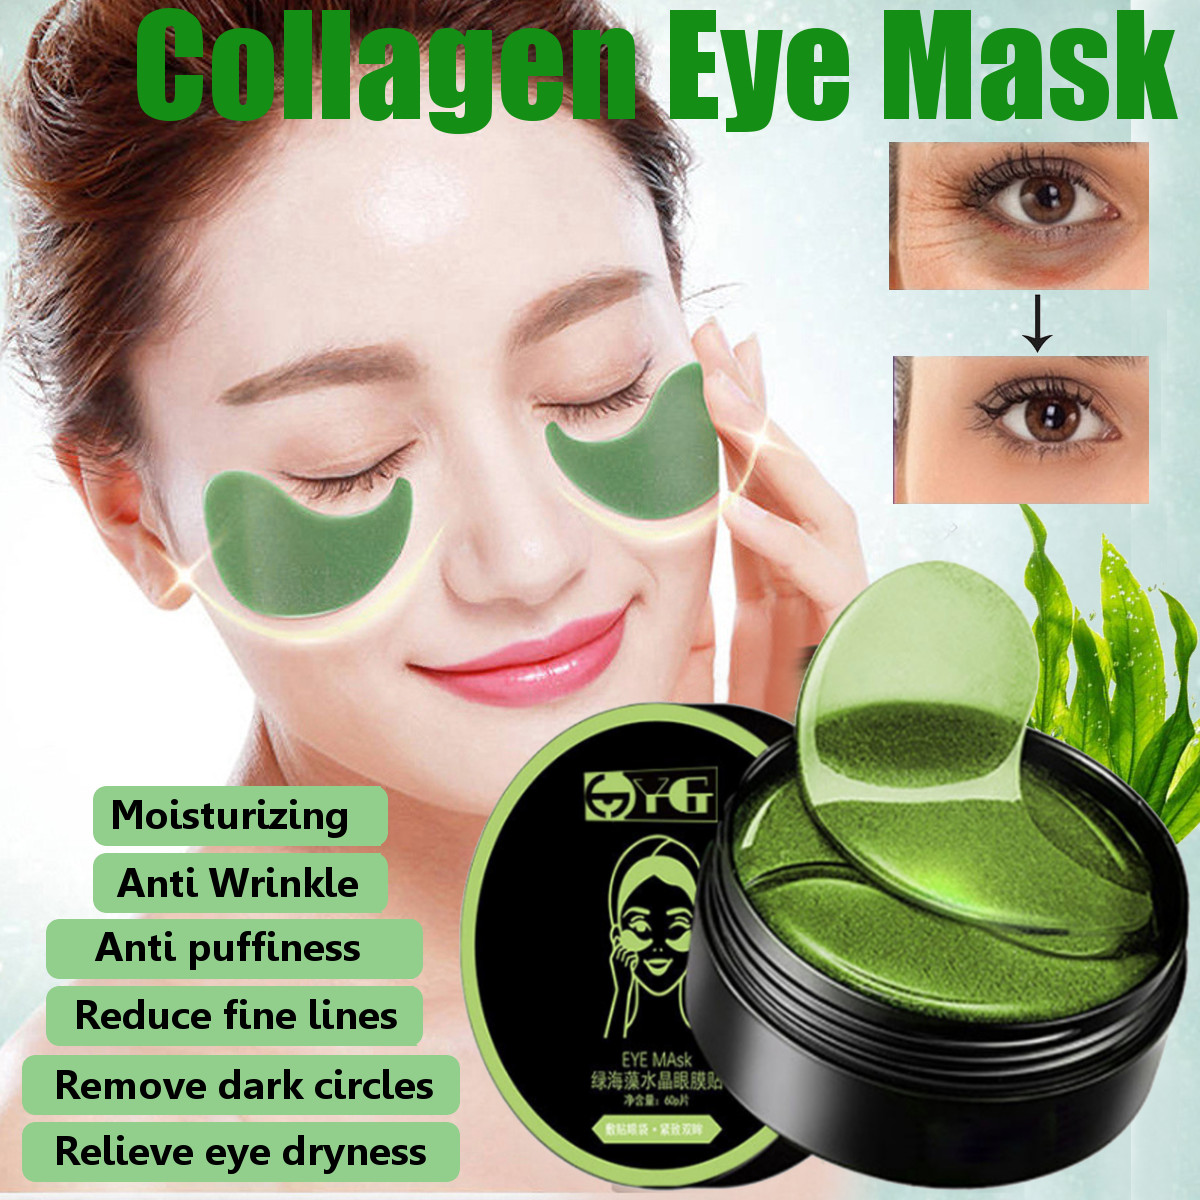 

Collagen Crystal Eye Mask Anti Wrinkle Gel Eye Patches Dark Circles